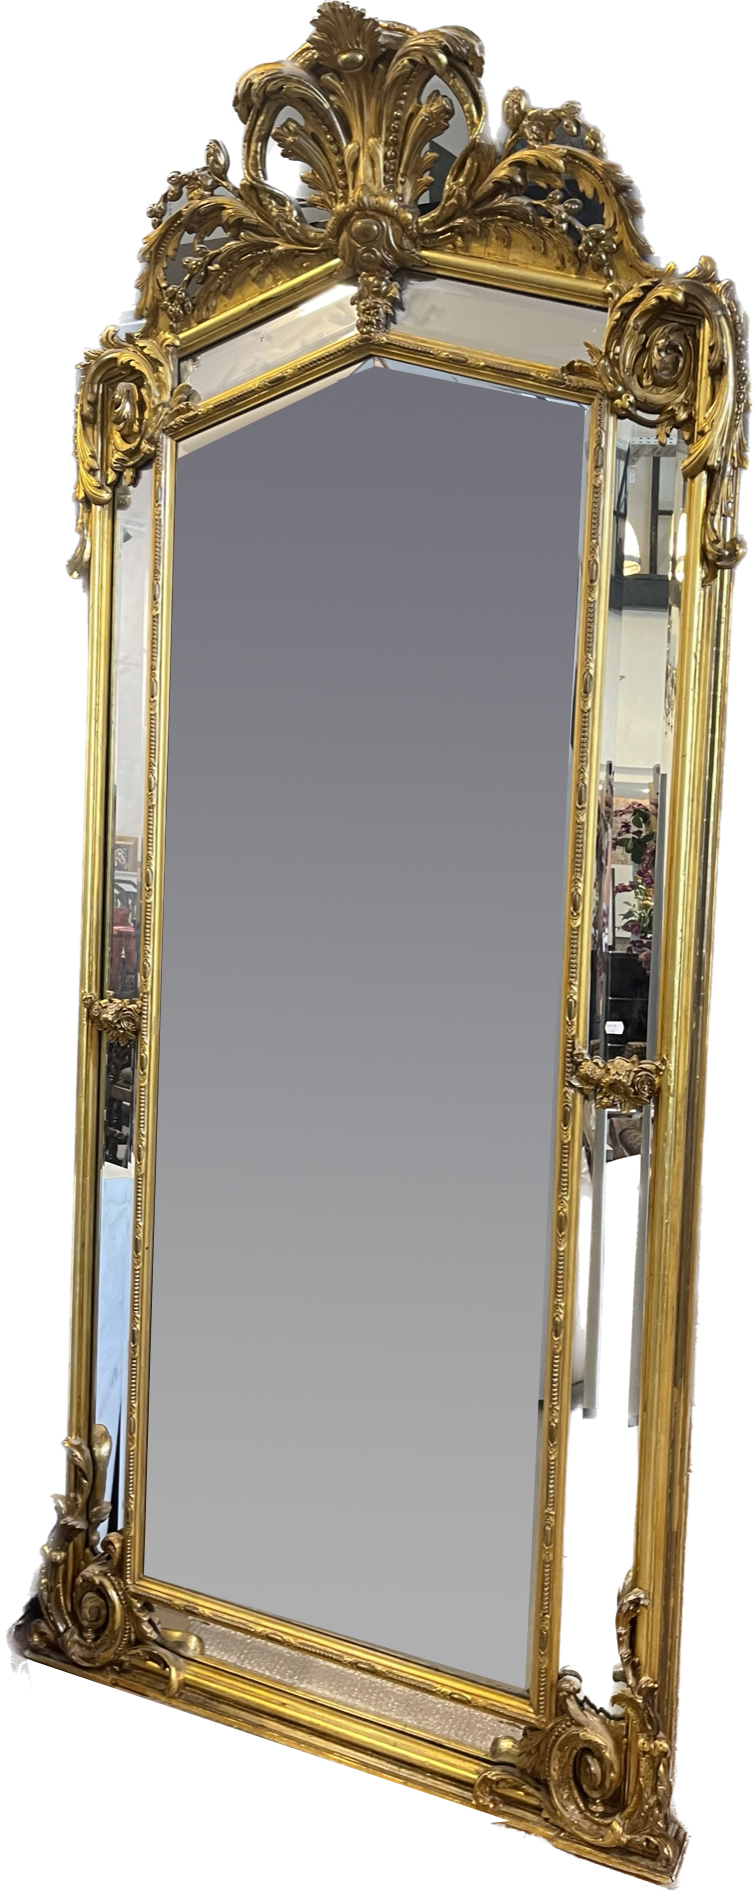 Monumentaler Spiegel im Stil Louis XV (19. Jh.).